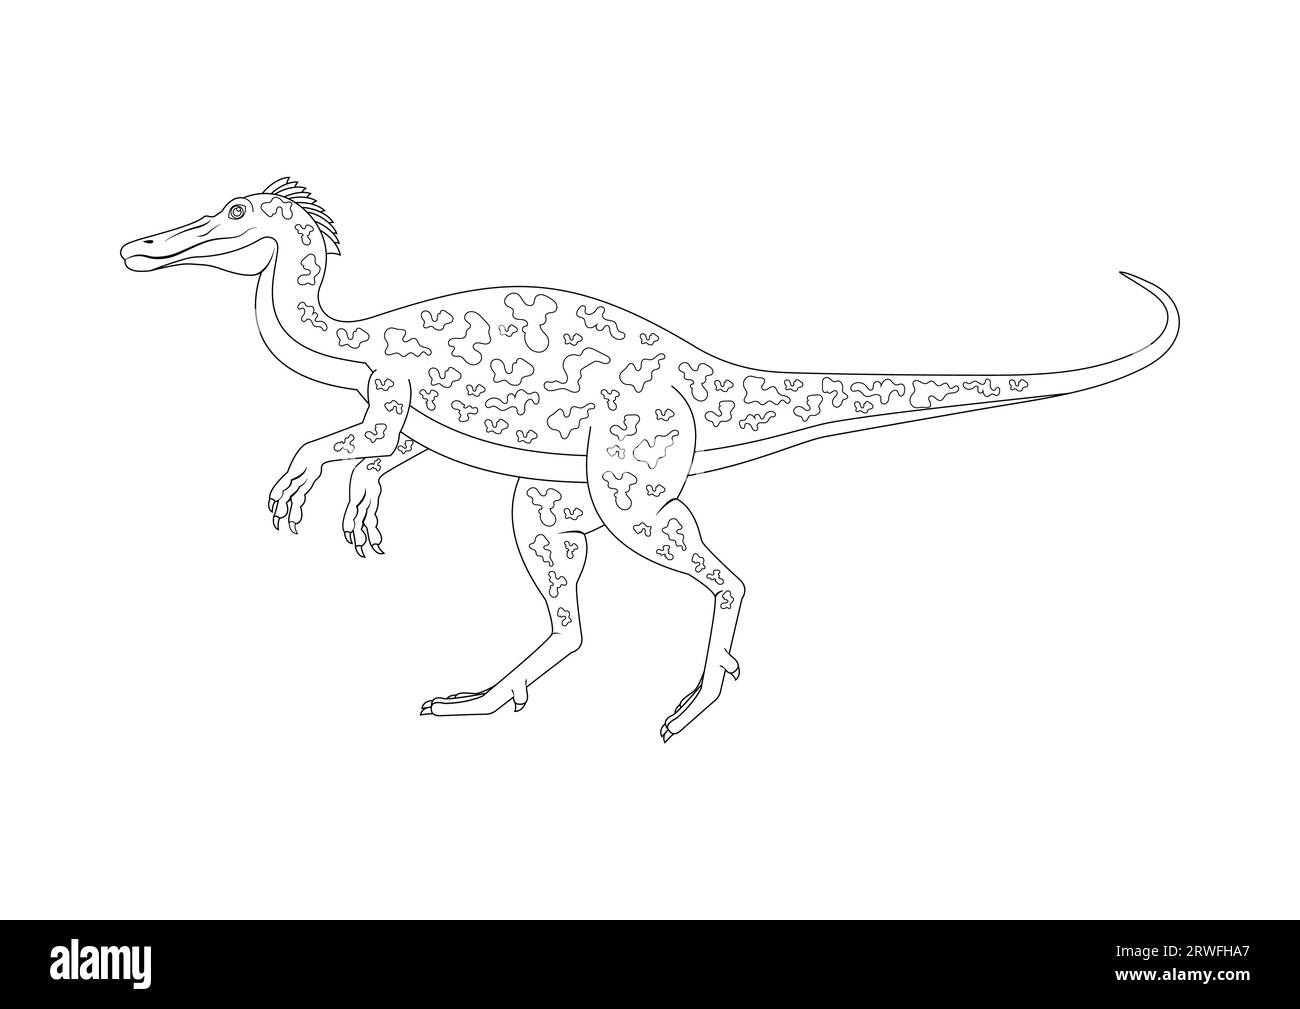 Black and White Baryonyx Dinosaur Cartoon Character Vector. Coloring Page of a Baryonyx Dinosaur Stock Vector